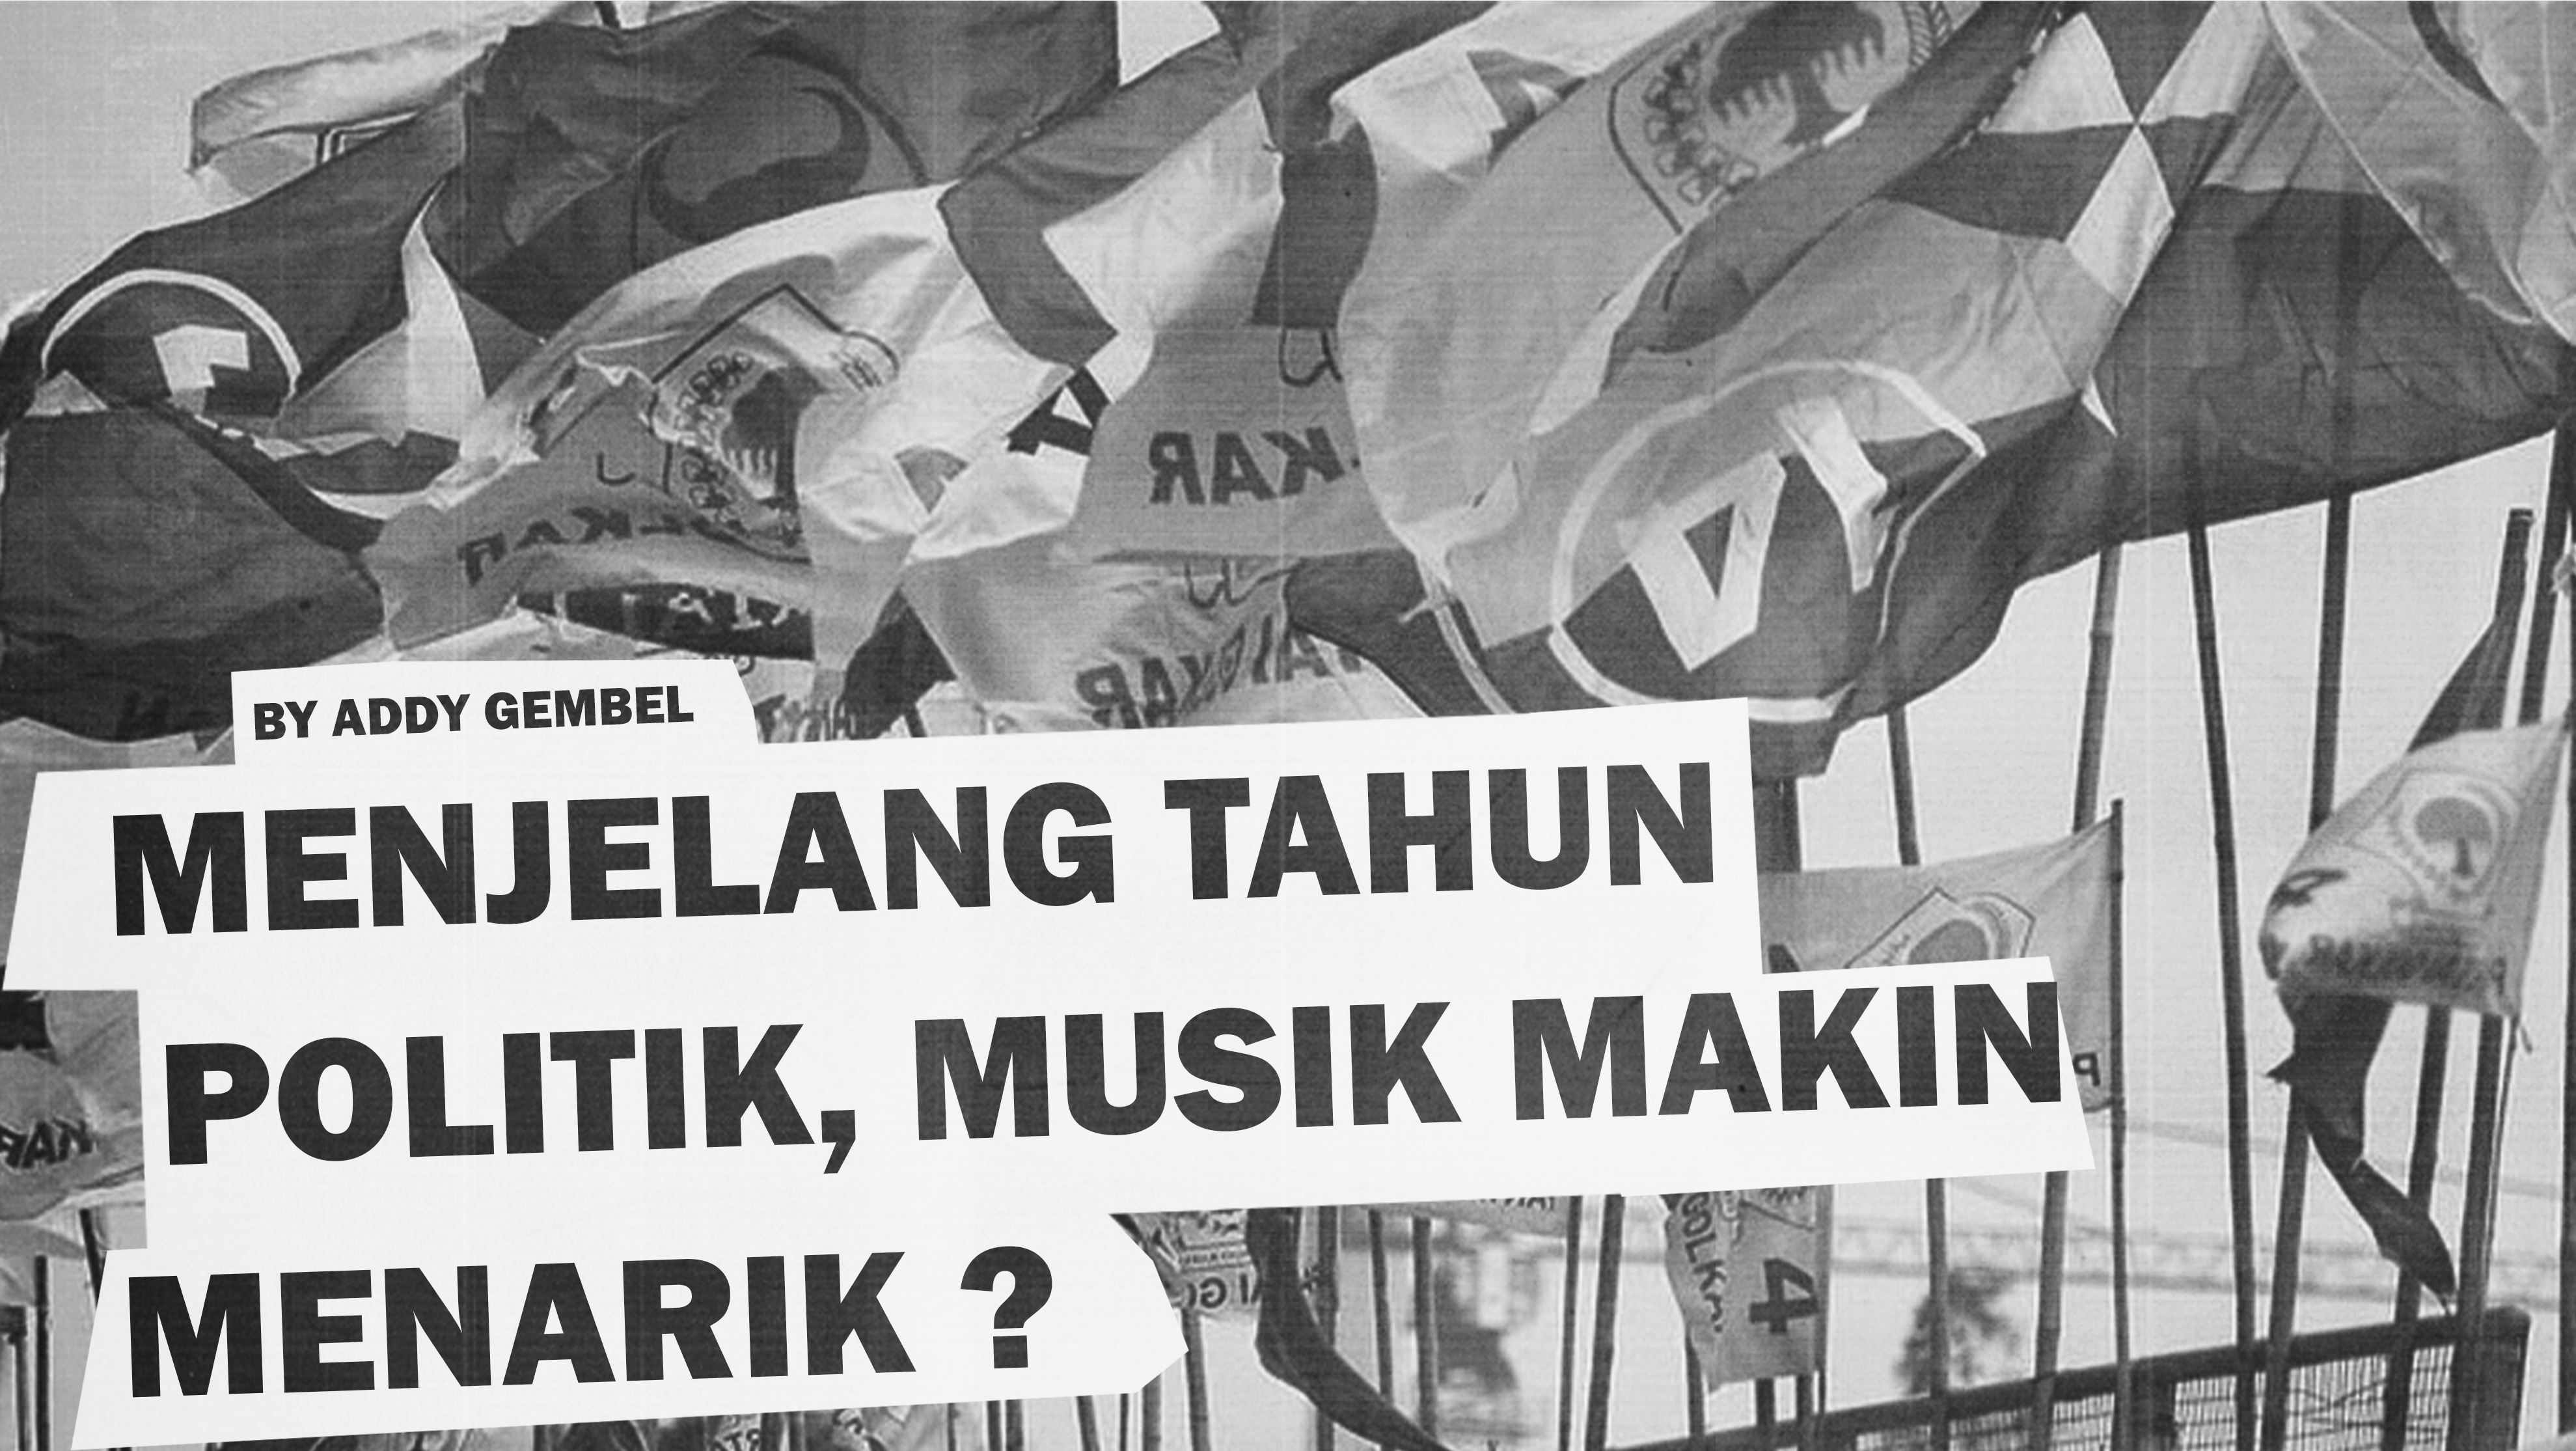 Menjelang Tahun Politik, Musik Makin Menarik ?